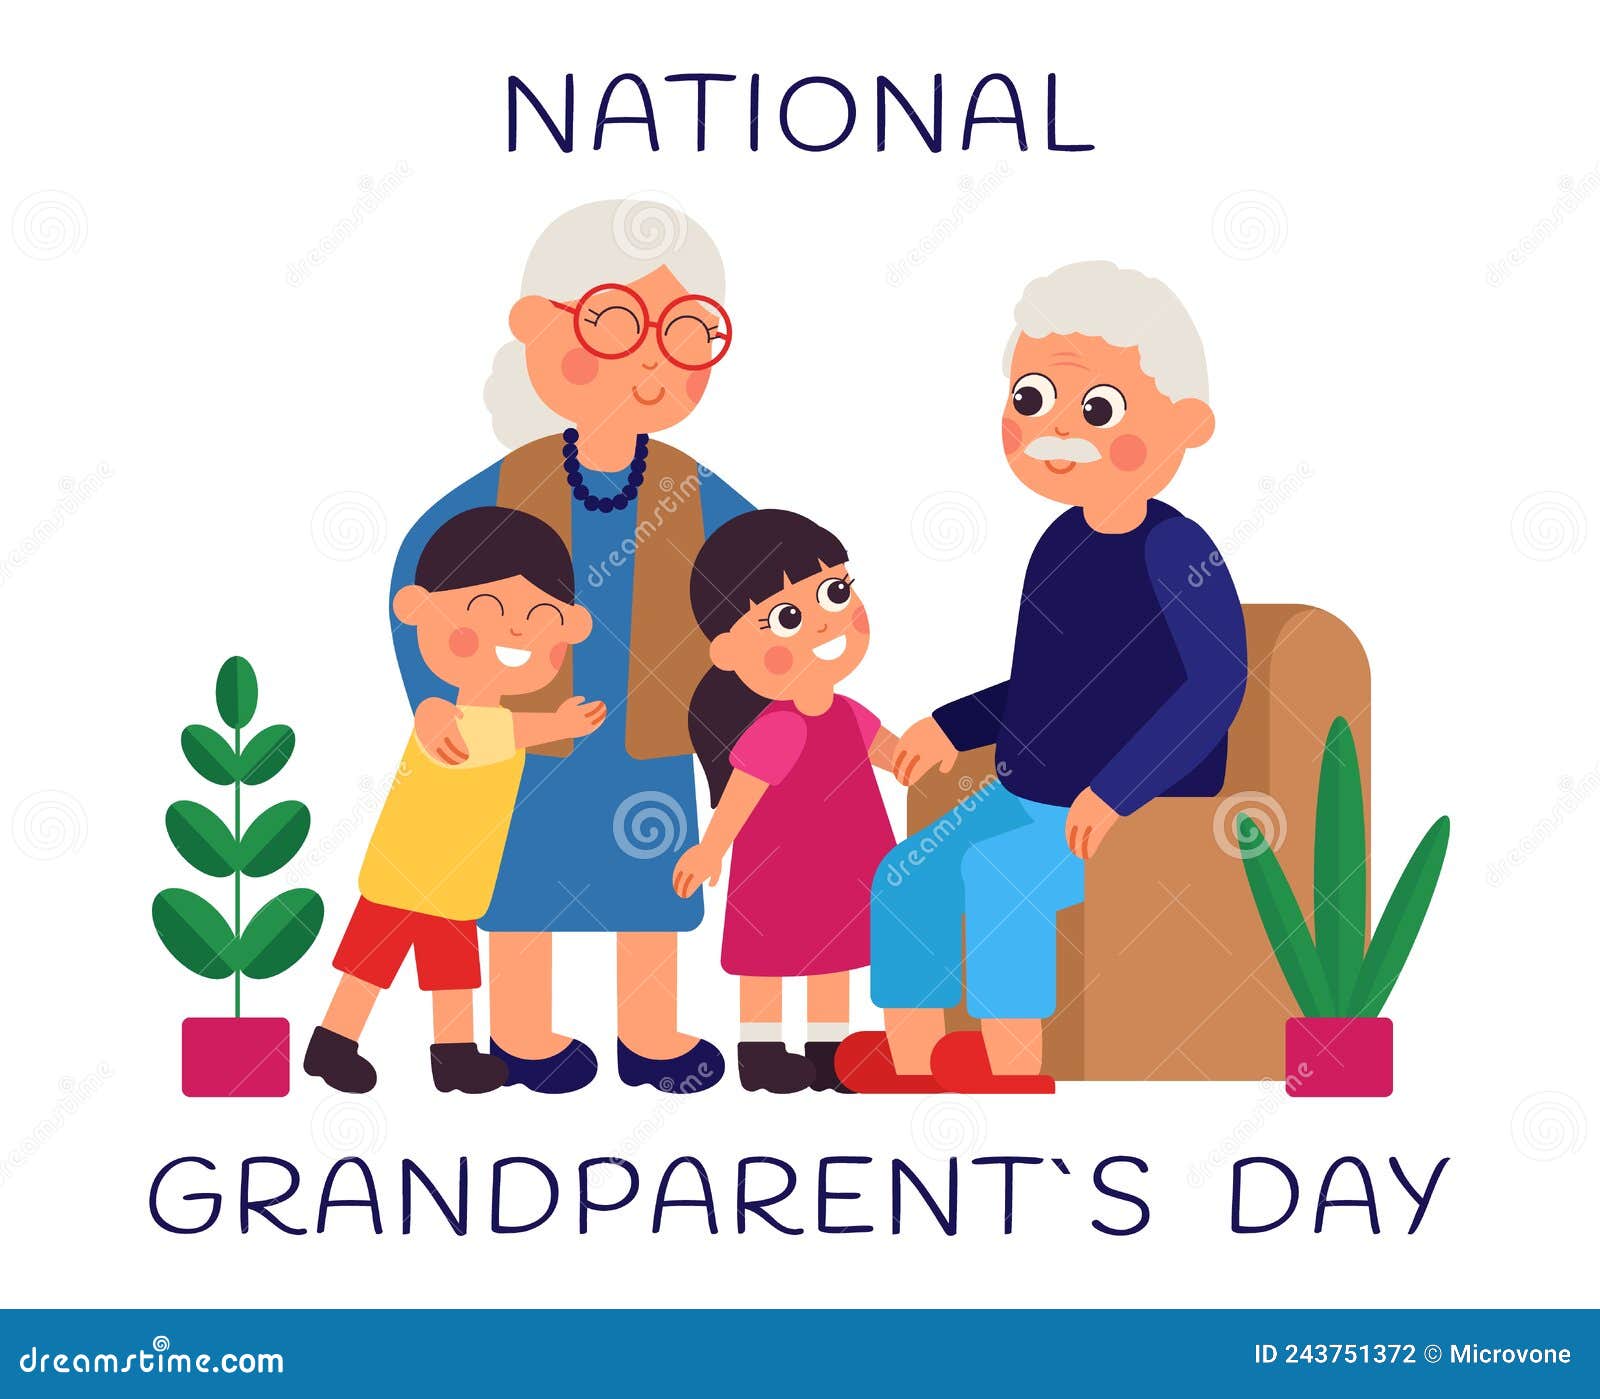 Grandparents Day. National Grandparent Festive, Grandchildren